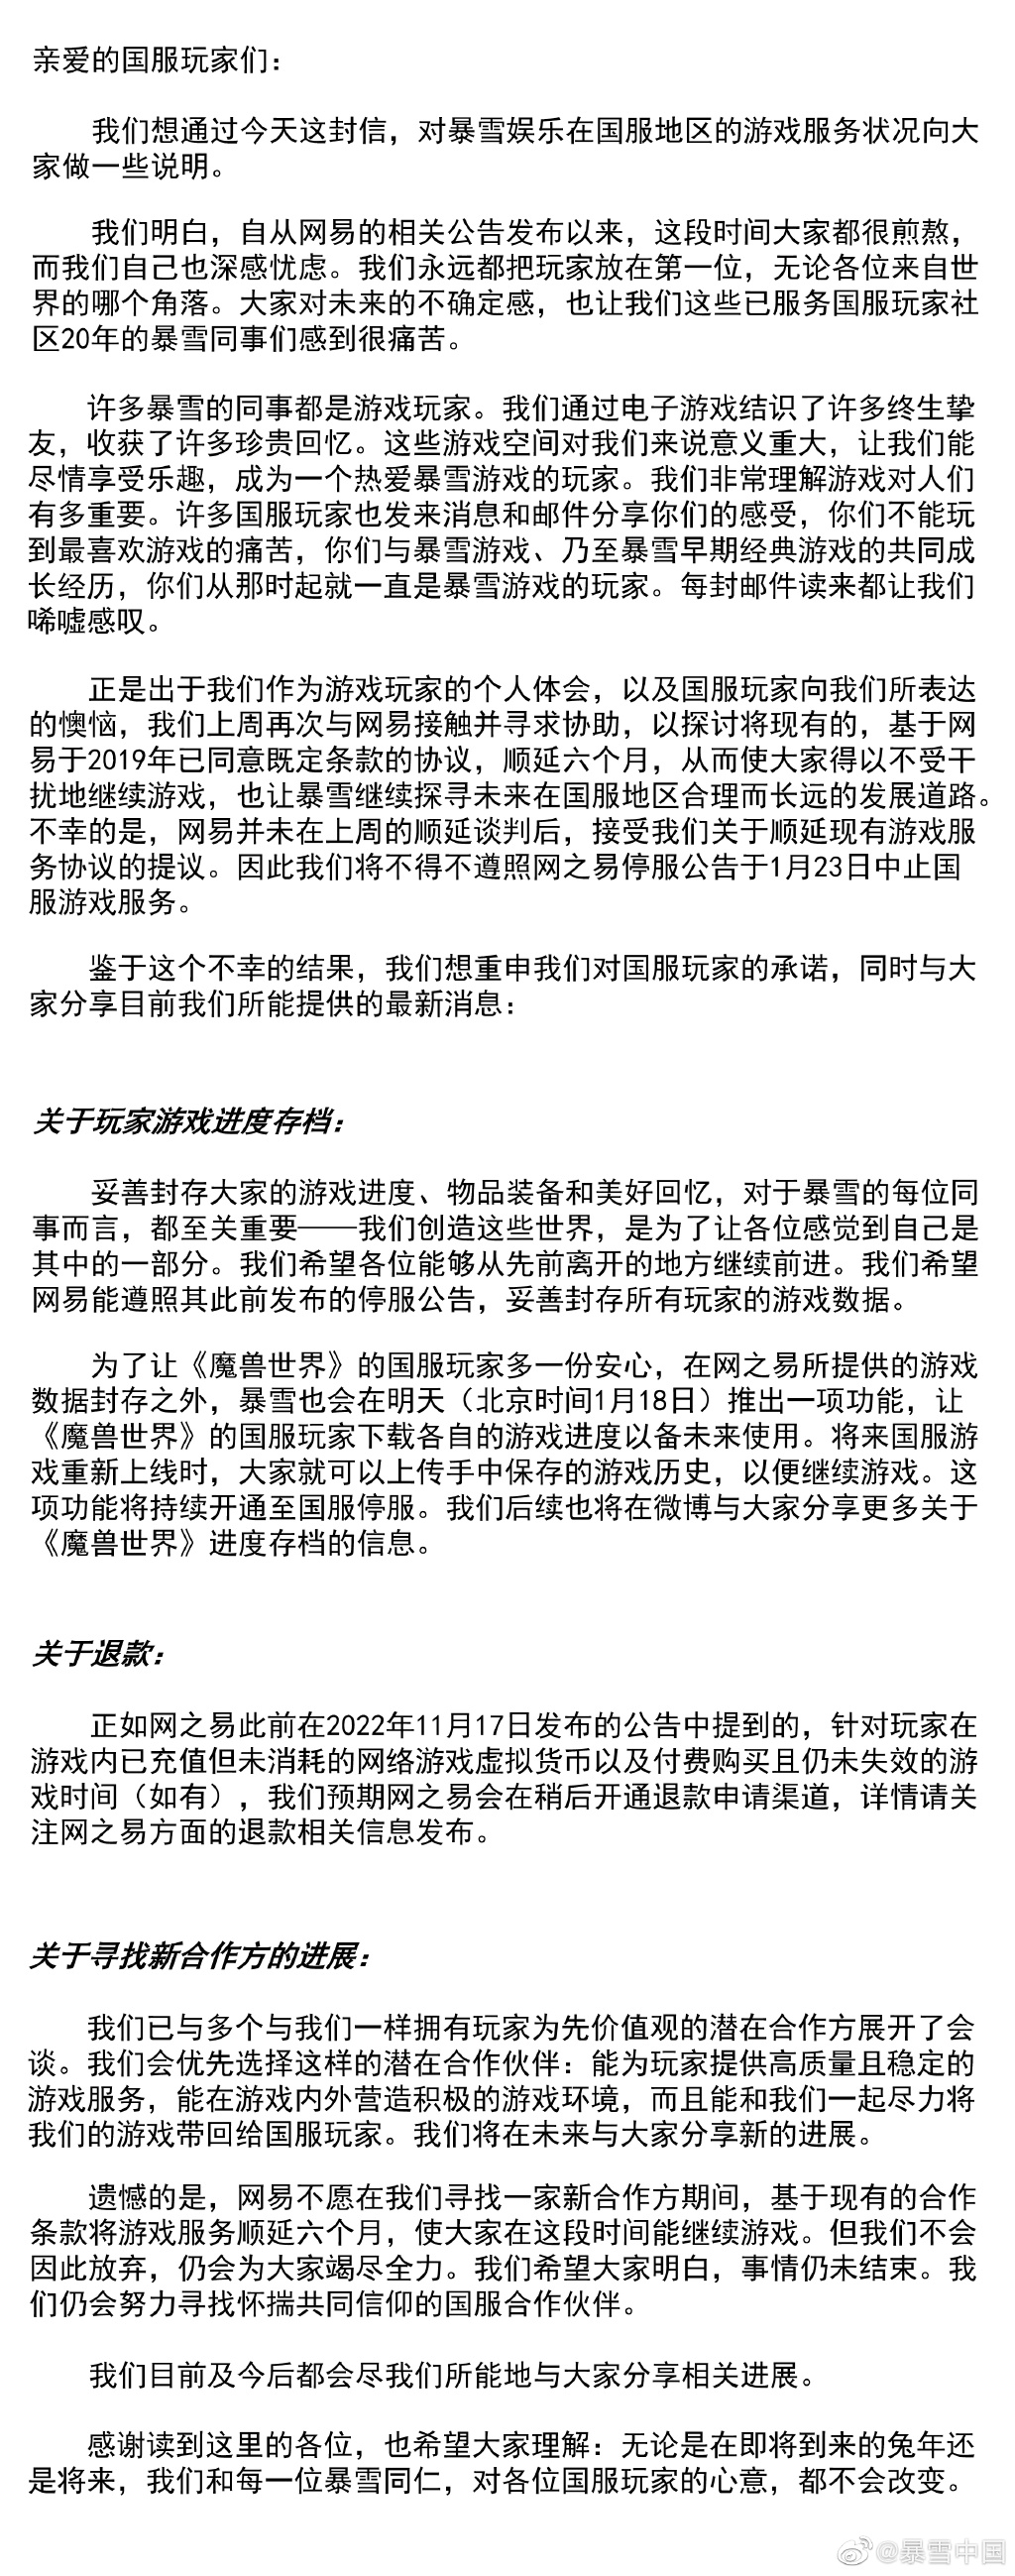 暴雪中国再次发文 要求网易延期合同6个月